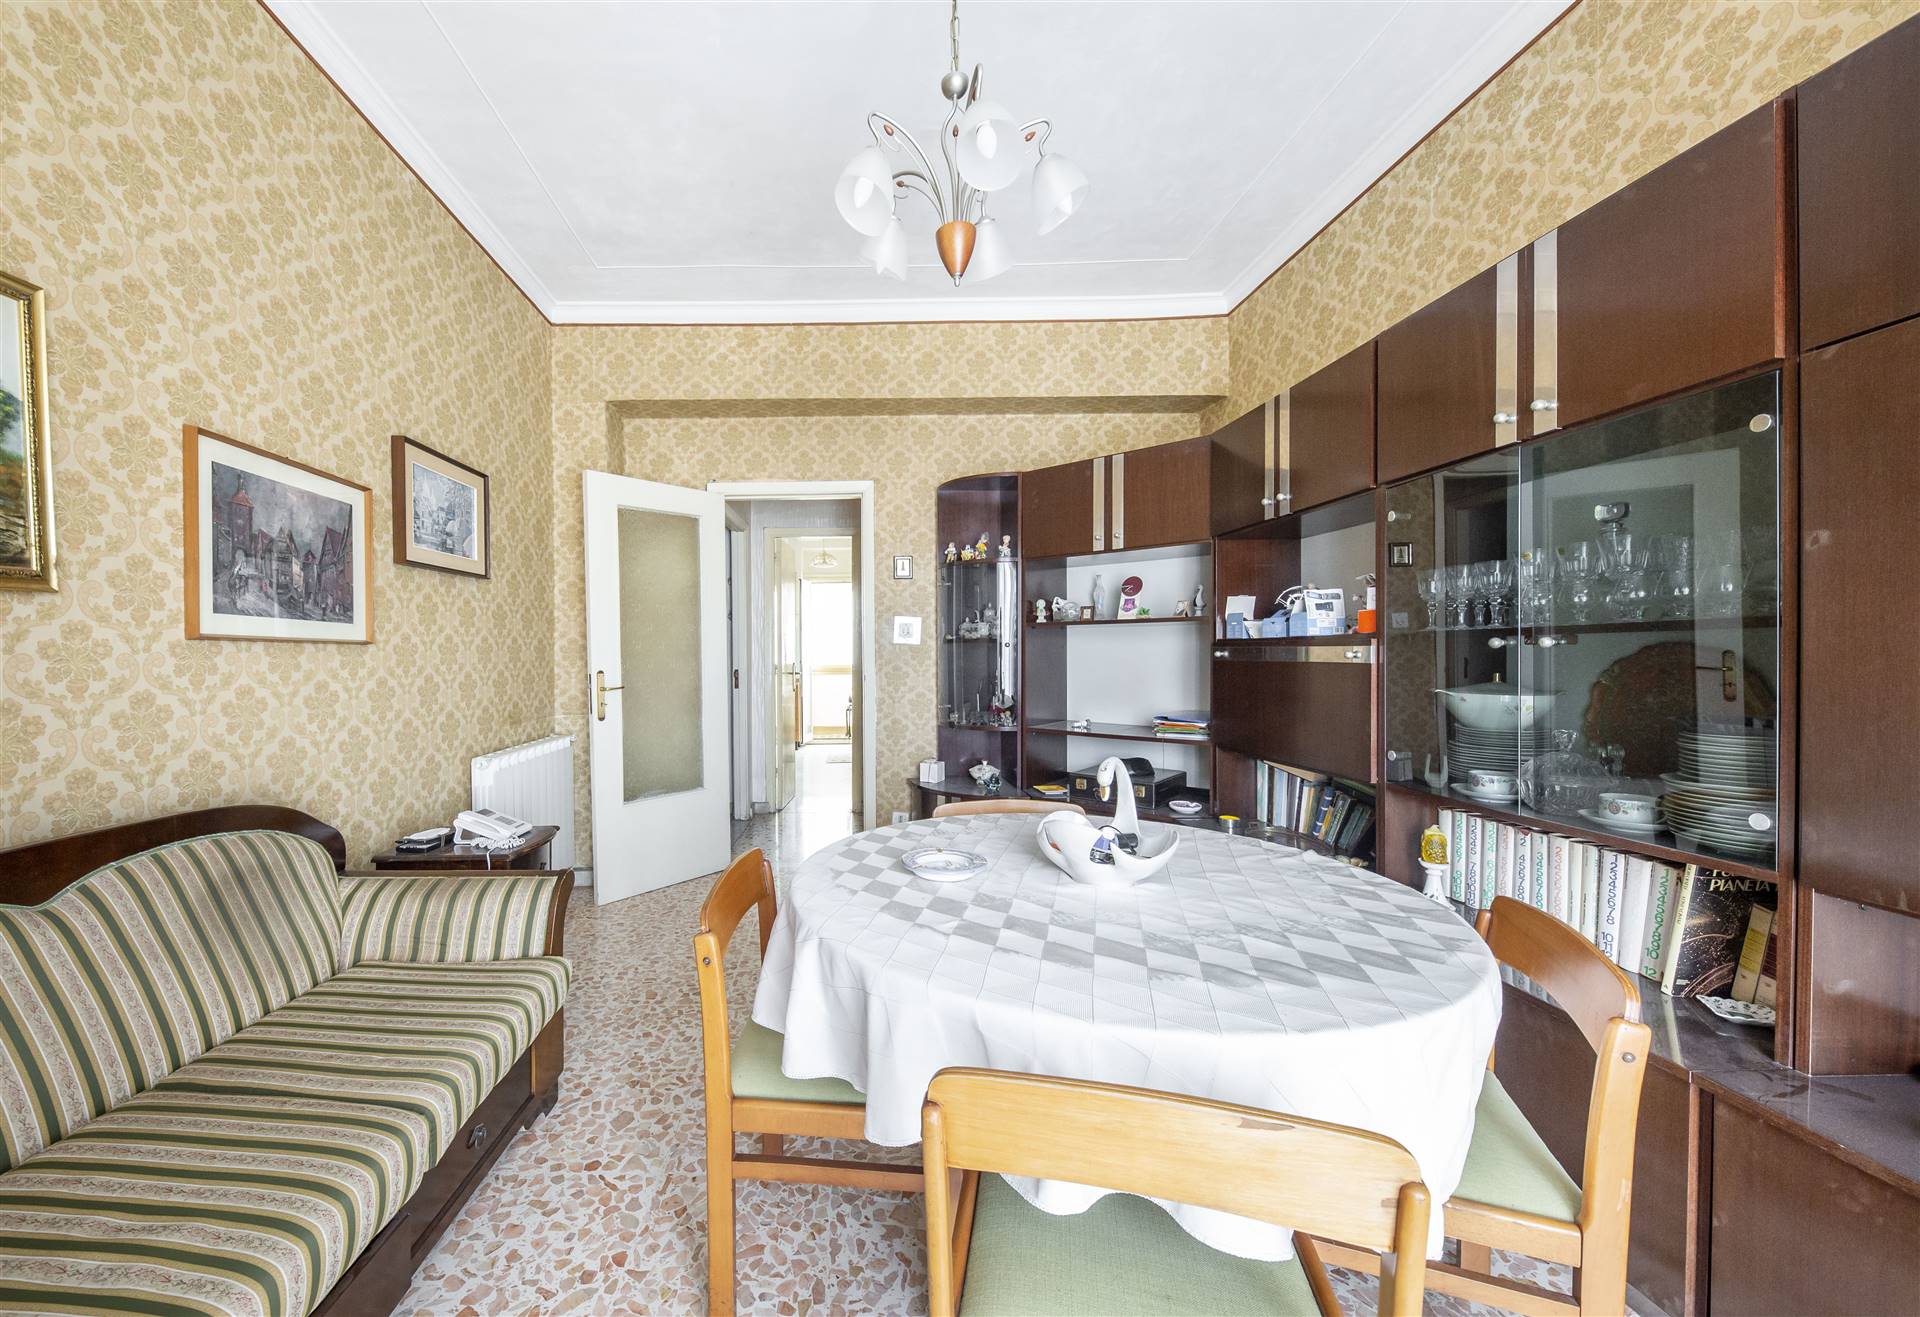 A Catania, in Via Salvatore Citelli, zona fornita e centrale, si propone la vendita di un appartamento di vani 3, luminoso e arioso (non essendo 